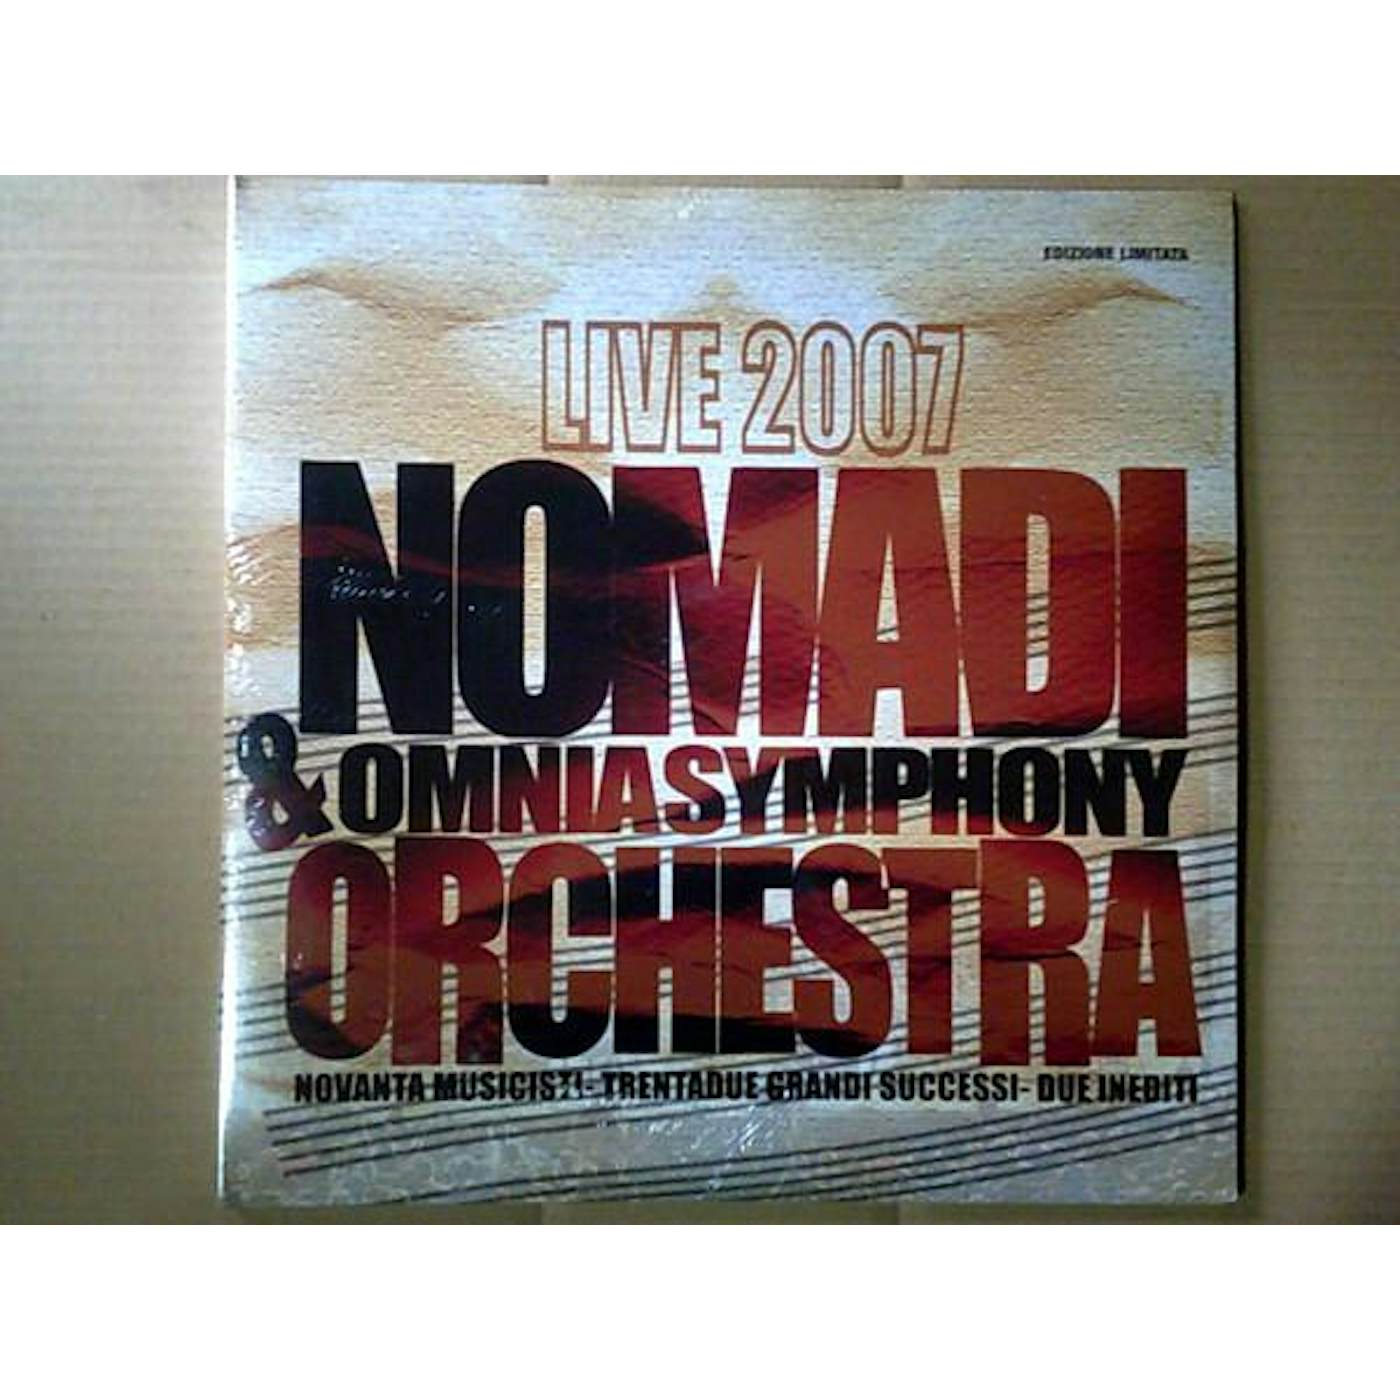 NOMADI & OMNIA SYMPHONY ORCHESTRA LIVE 2007 Vinyl Record